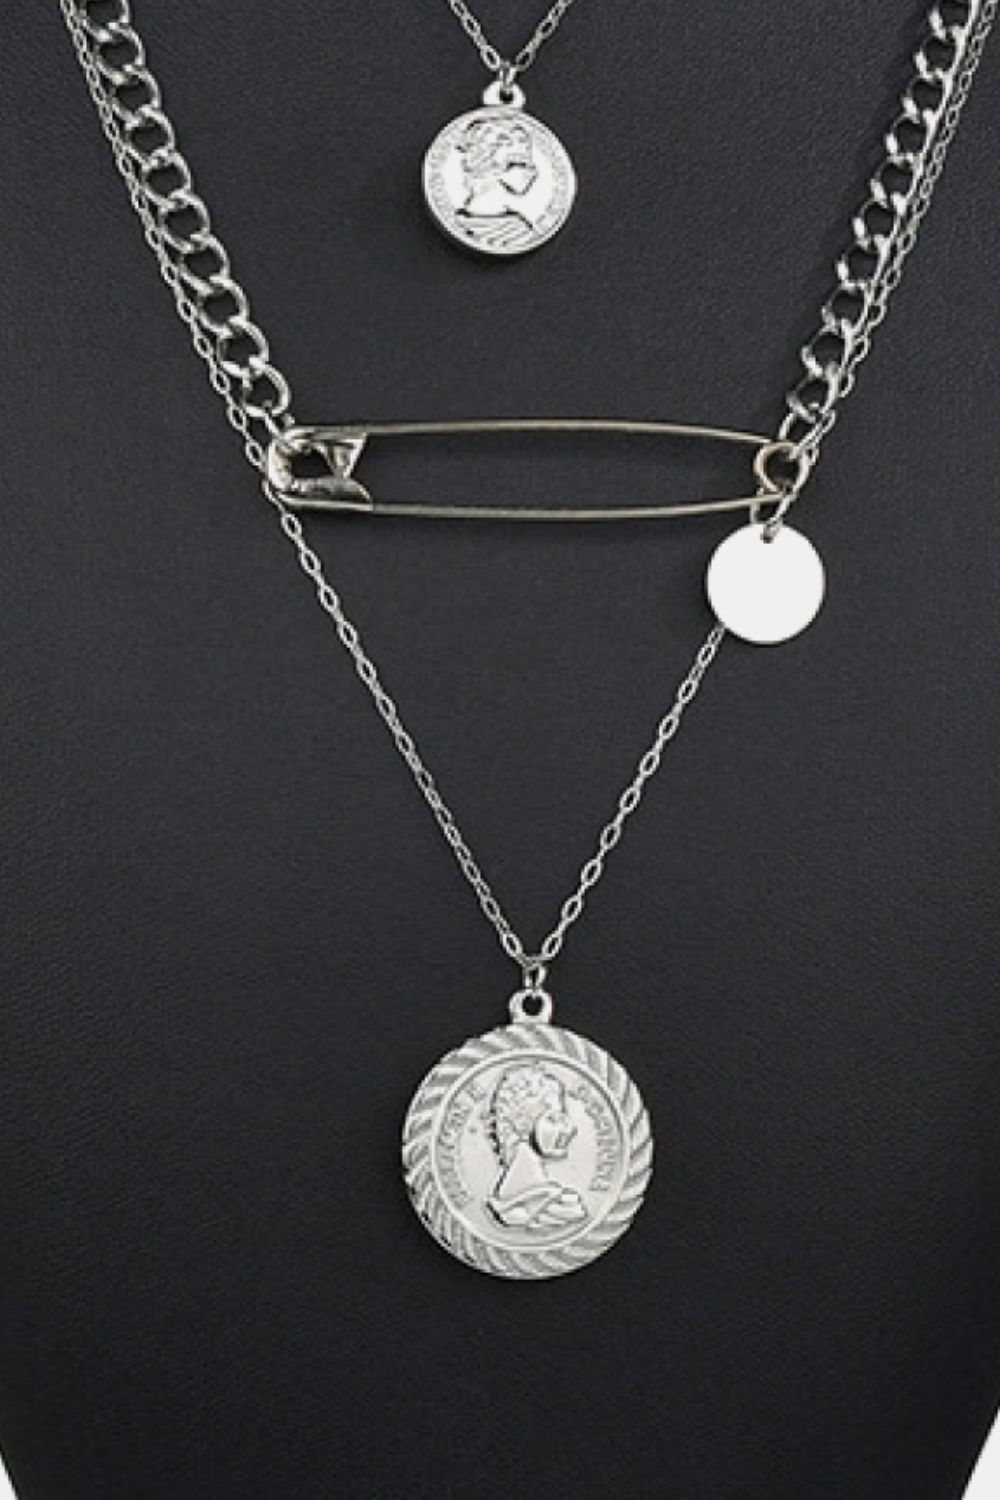 Minimalist Design Antique Coins Necklace - Lylah's